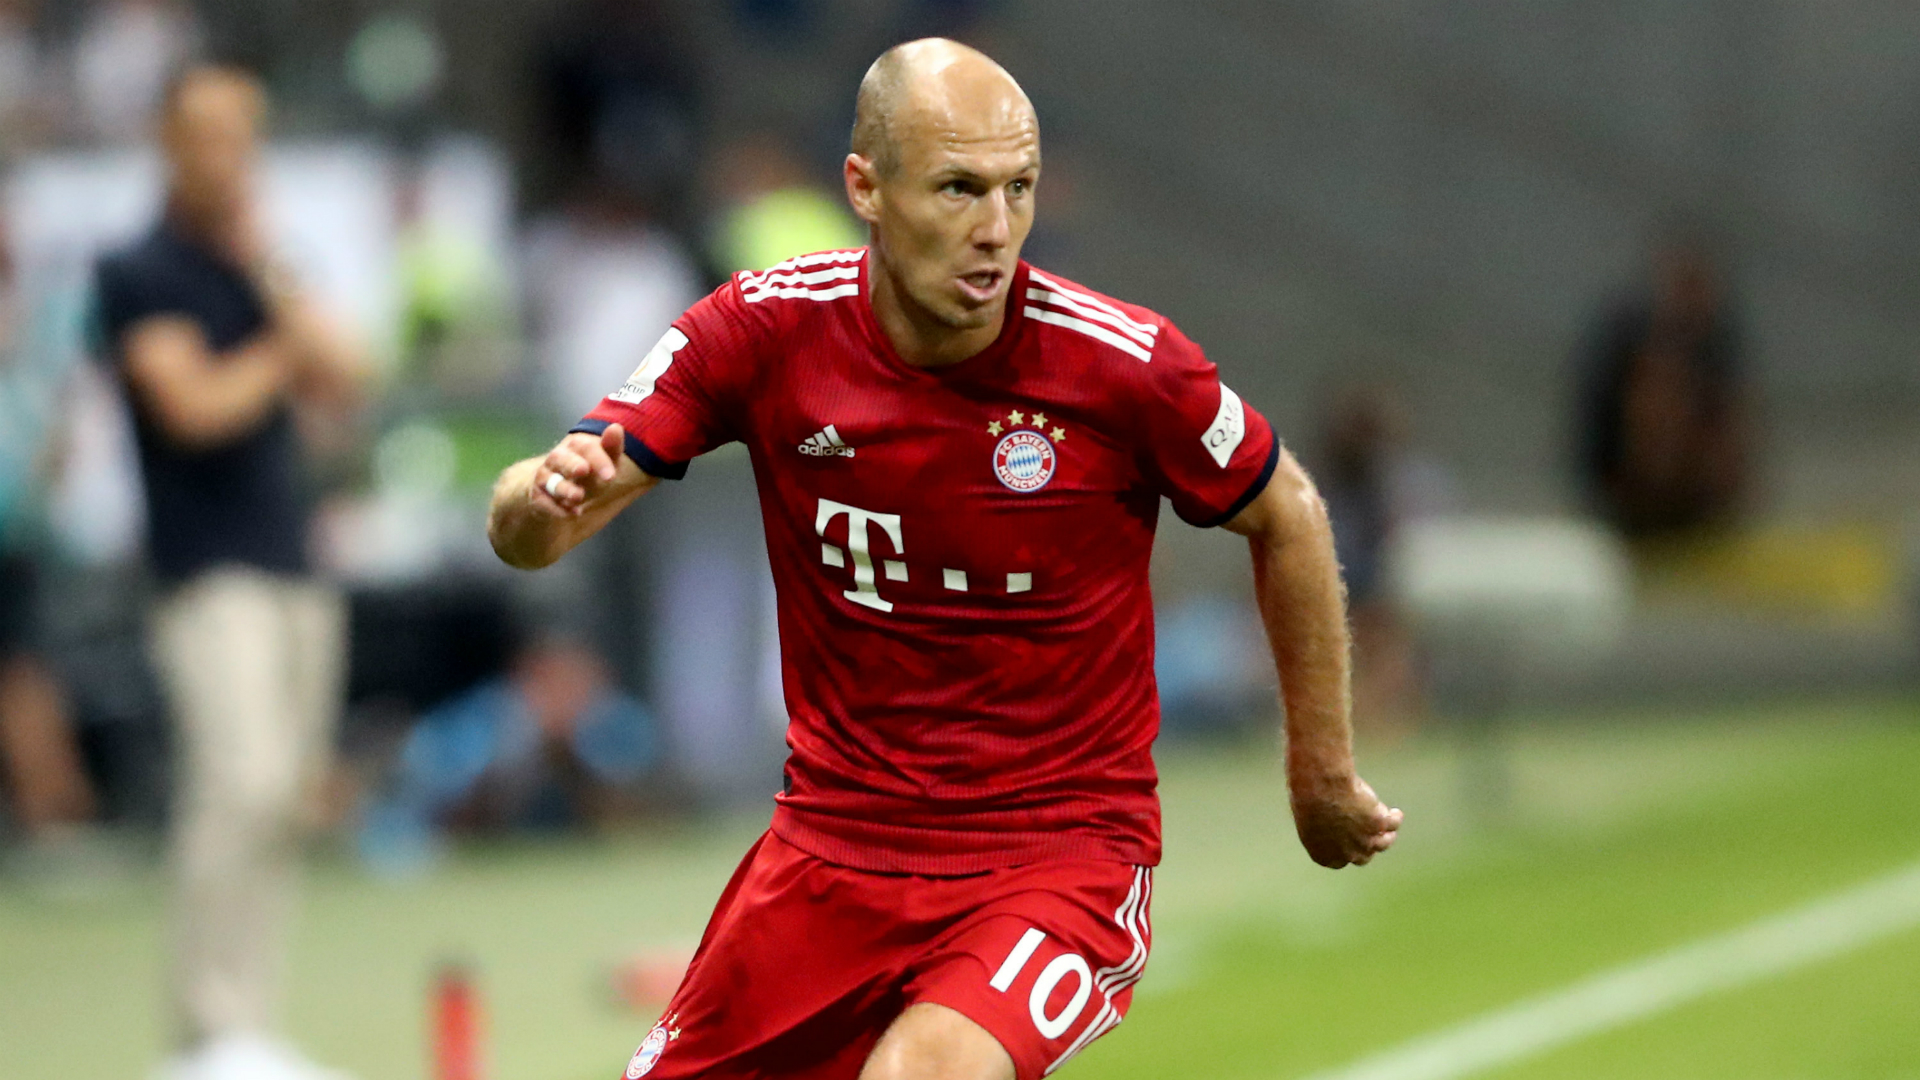 Arjen Robben Bayern Munich , HD Wallpaper & Backgrounds